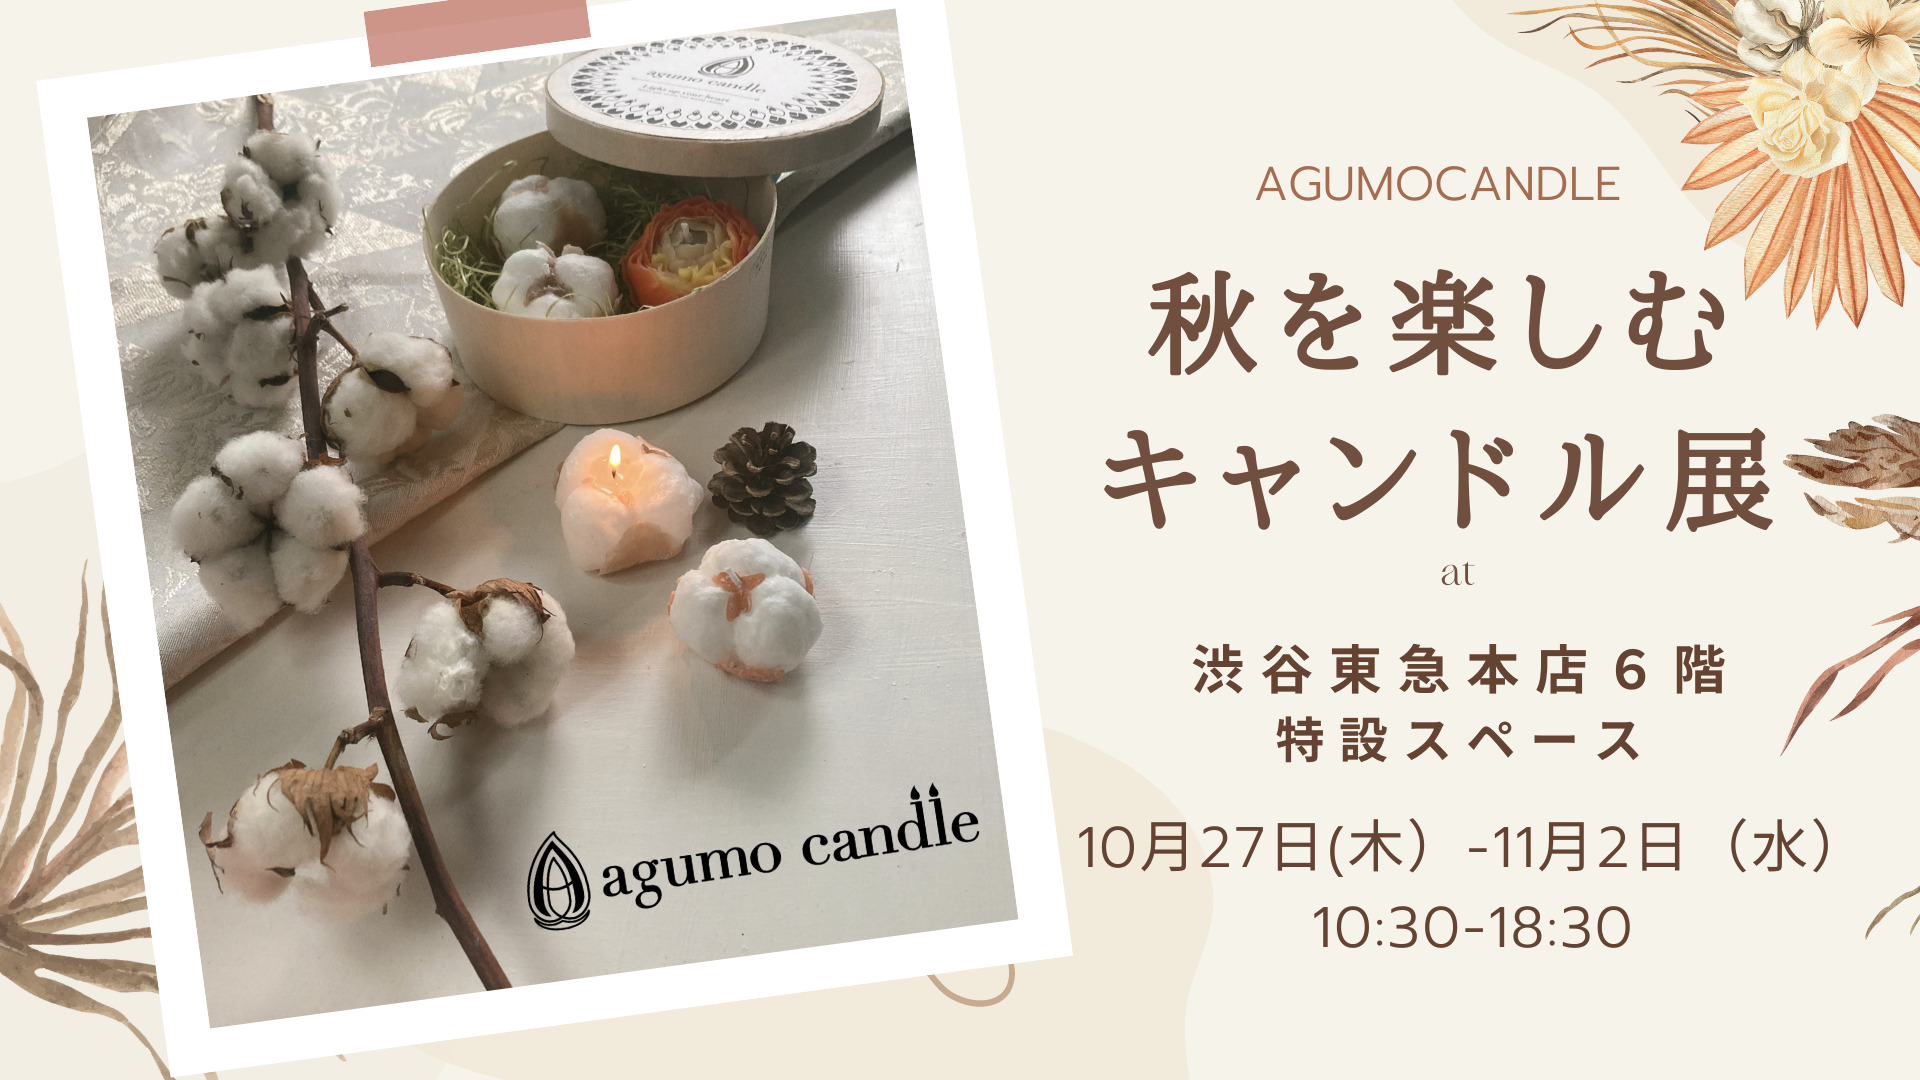 【アグモキャンドル】秋を楽しむキャンドル展、渋谷東急本店にて開催